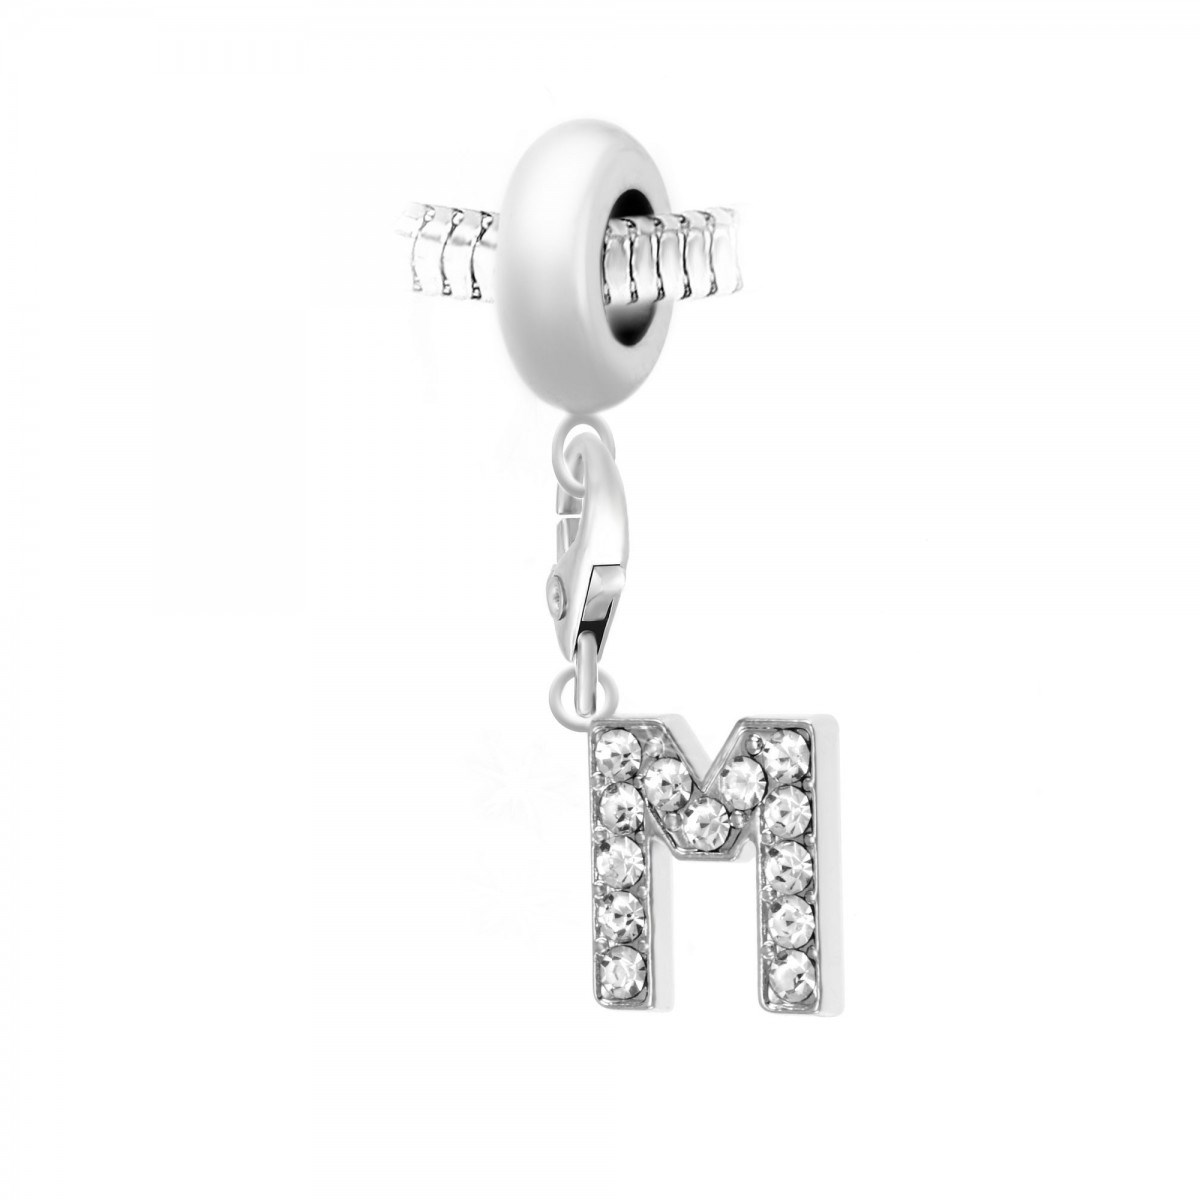 Charm perle SC Crystal en acier avec pendentif lettre M ornée de Cristaux scintillants